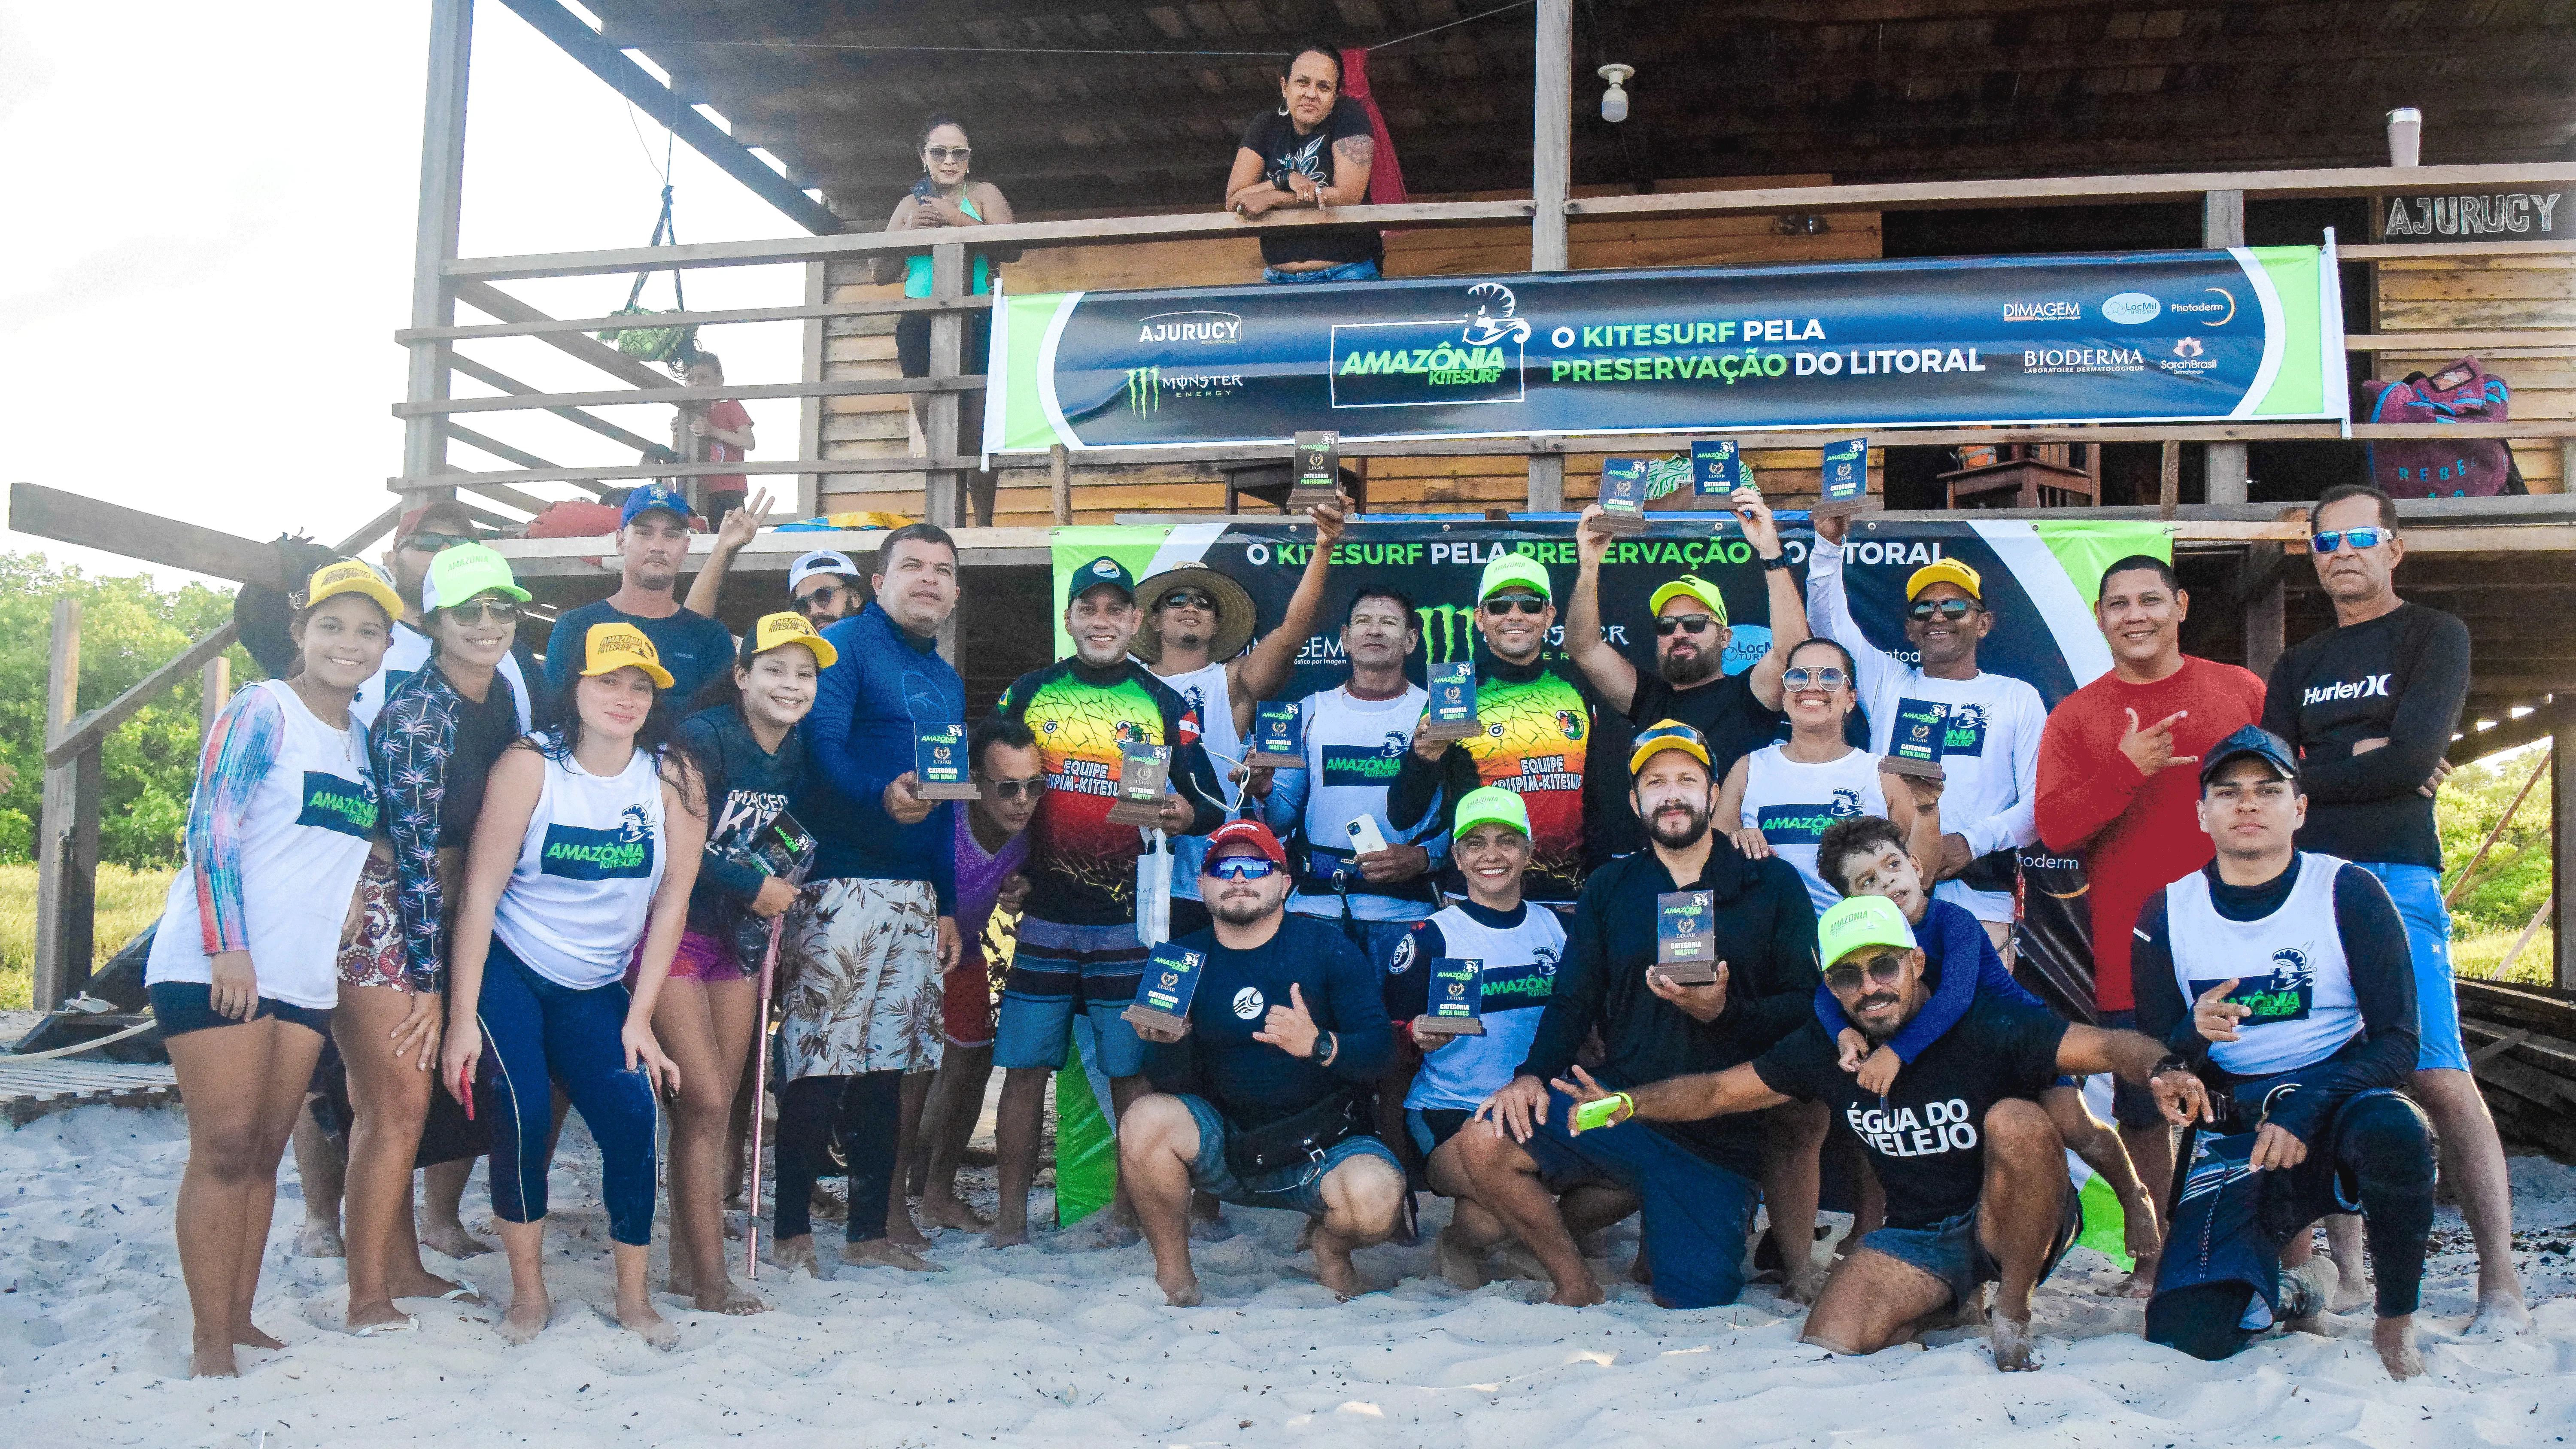 A competição contou com a participação de 40 atletas regionais provenientes de diversos municípios do Pará, que disputaram em diferentes categorias.